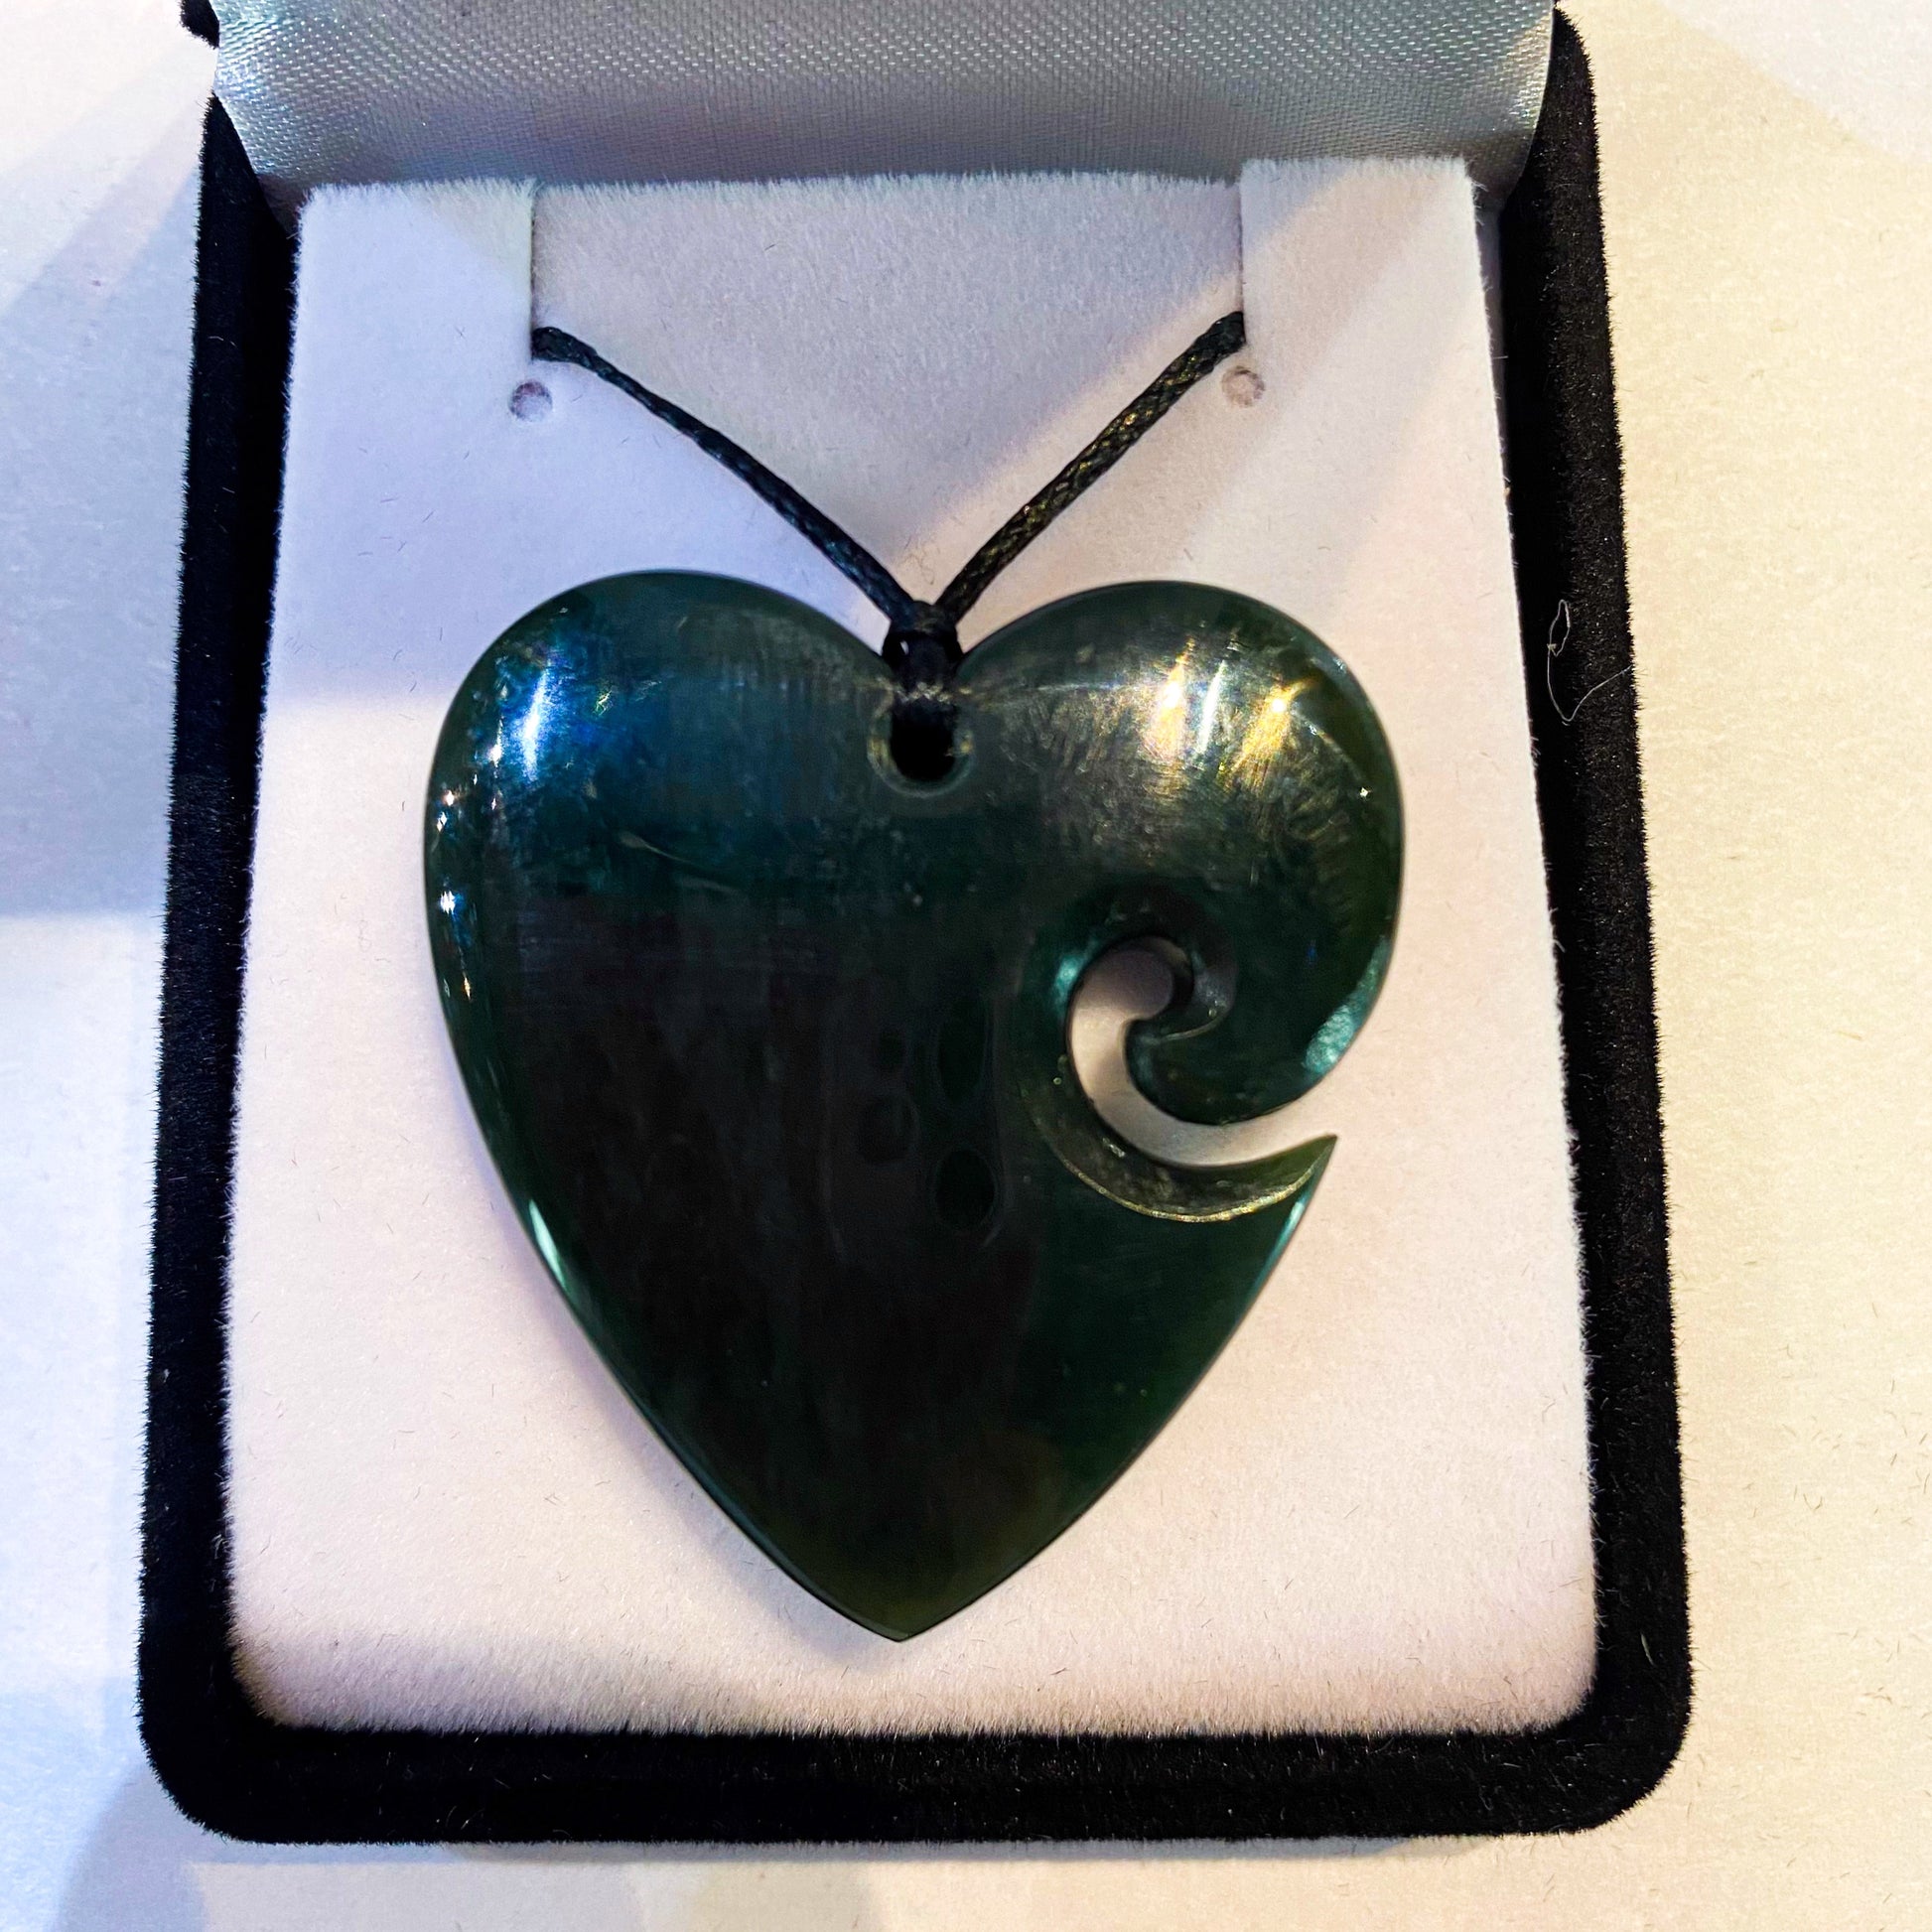 Heart Greenstone Pendant with Koru Indentation - Rivendell Shop